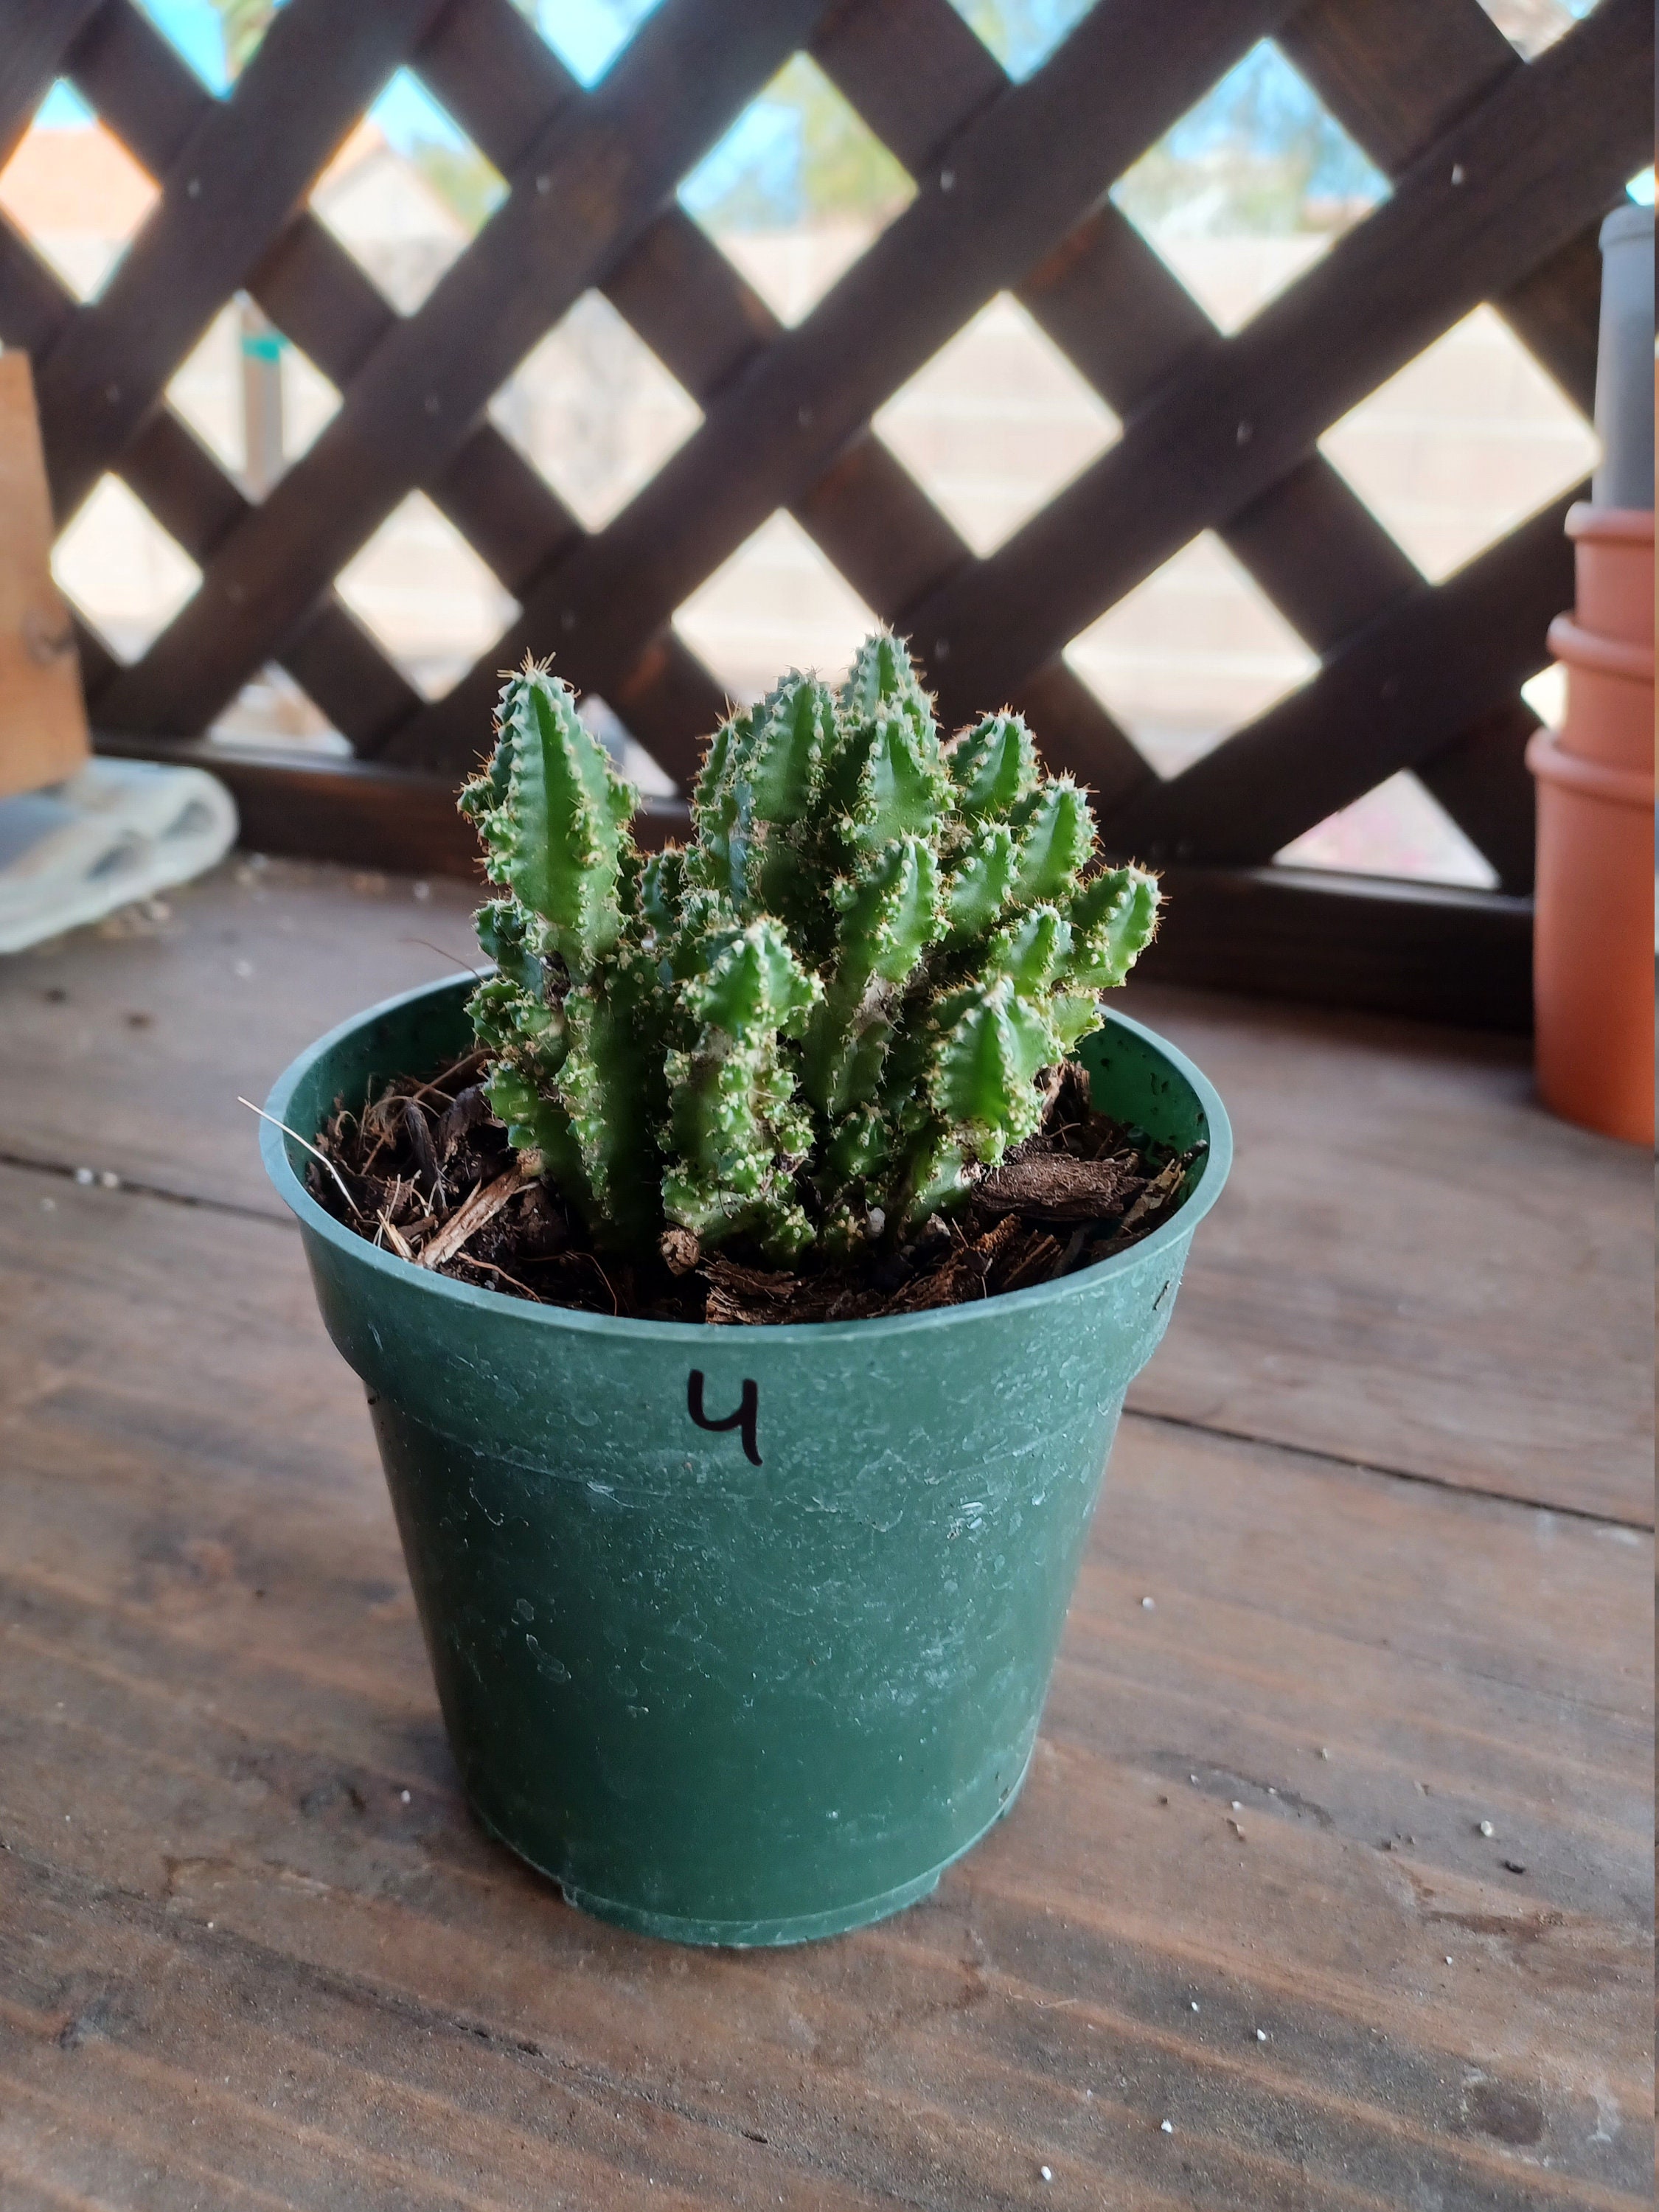 Fairy castle cactus plant 3.5 in pot live houseplant #4